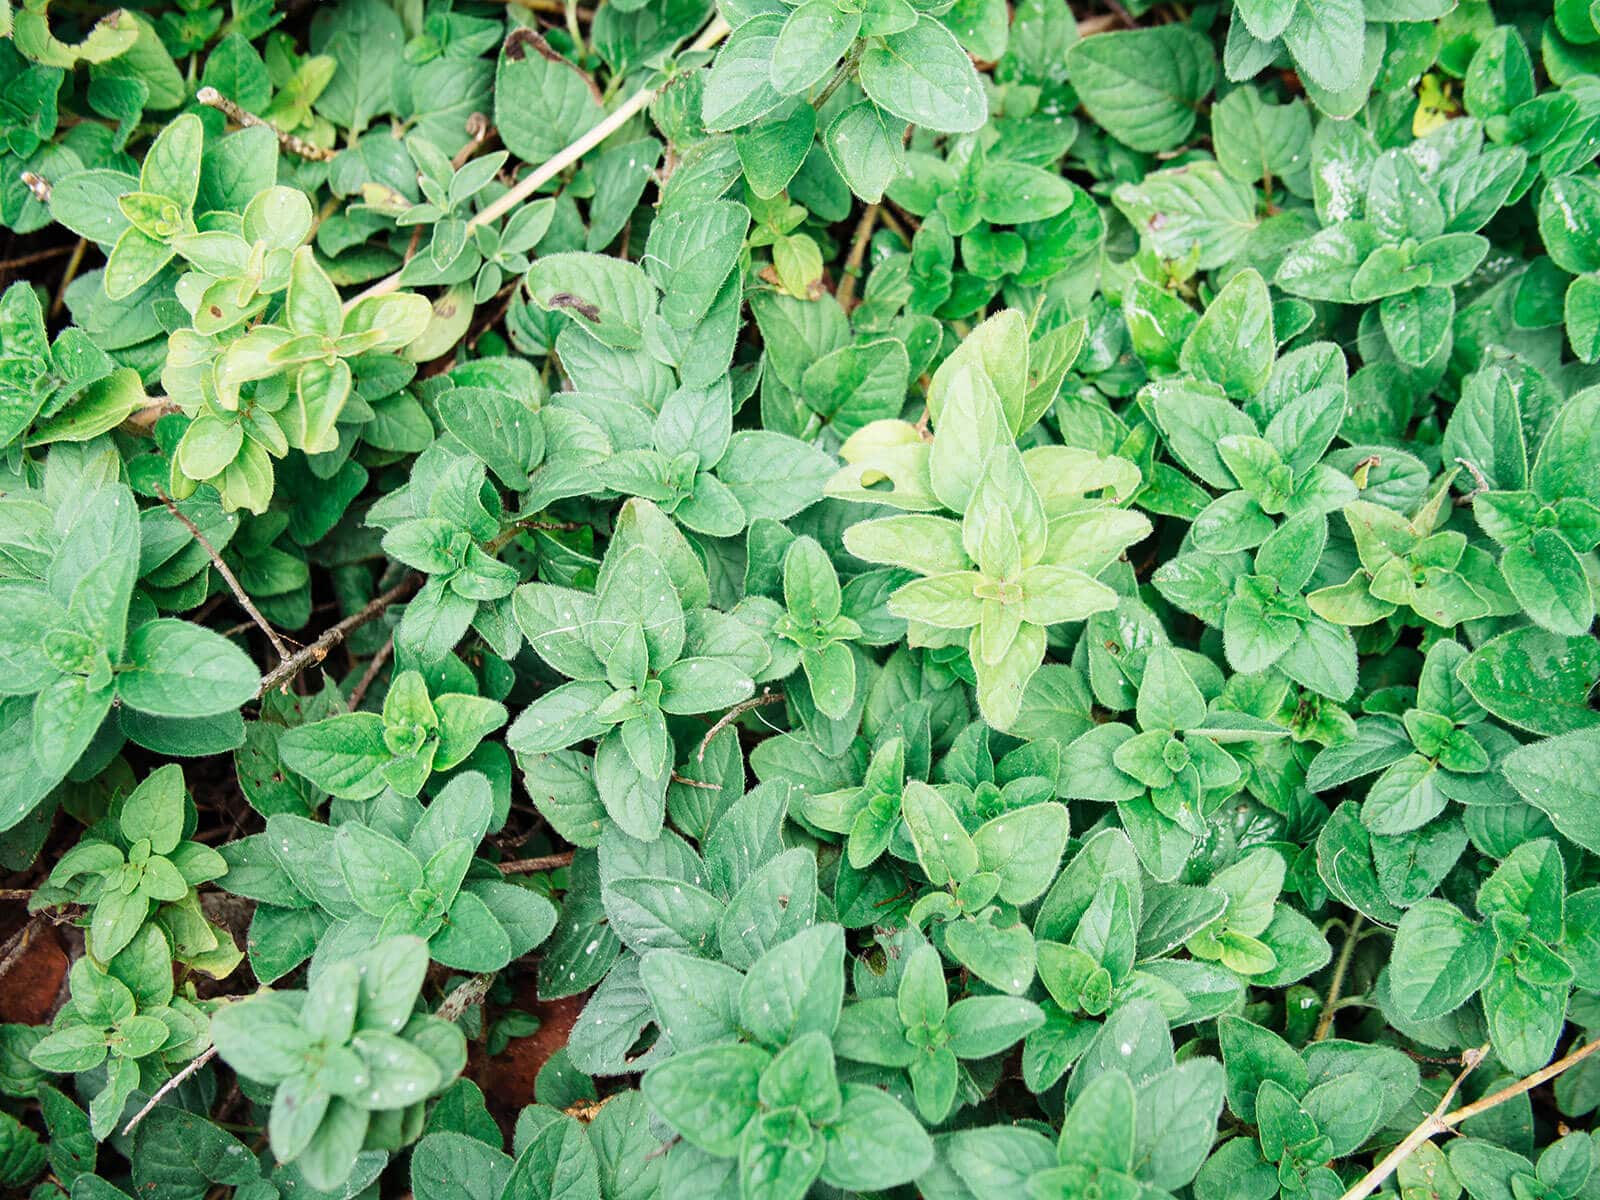 Oregano grown as an edible ground cover